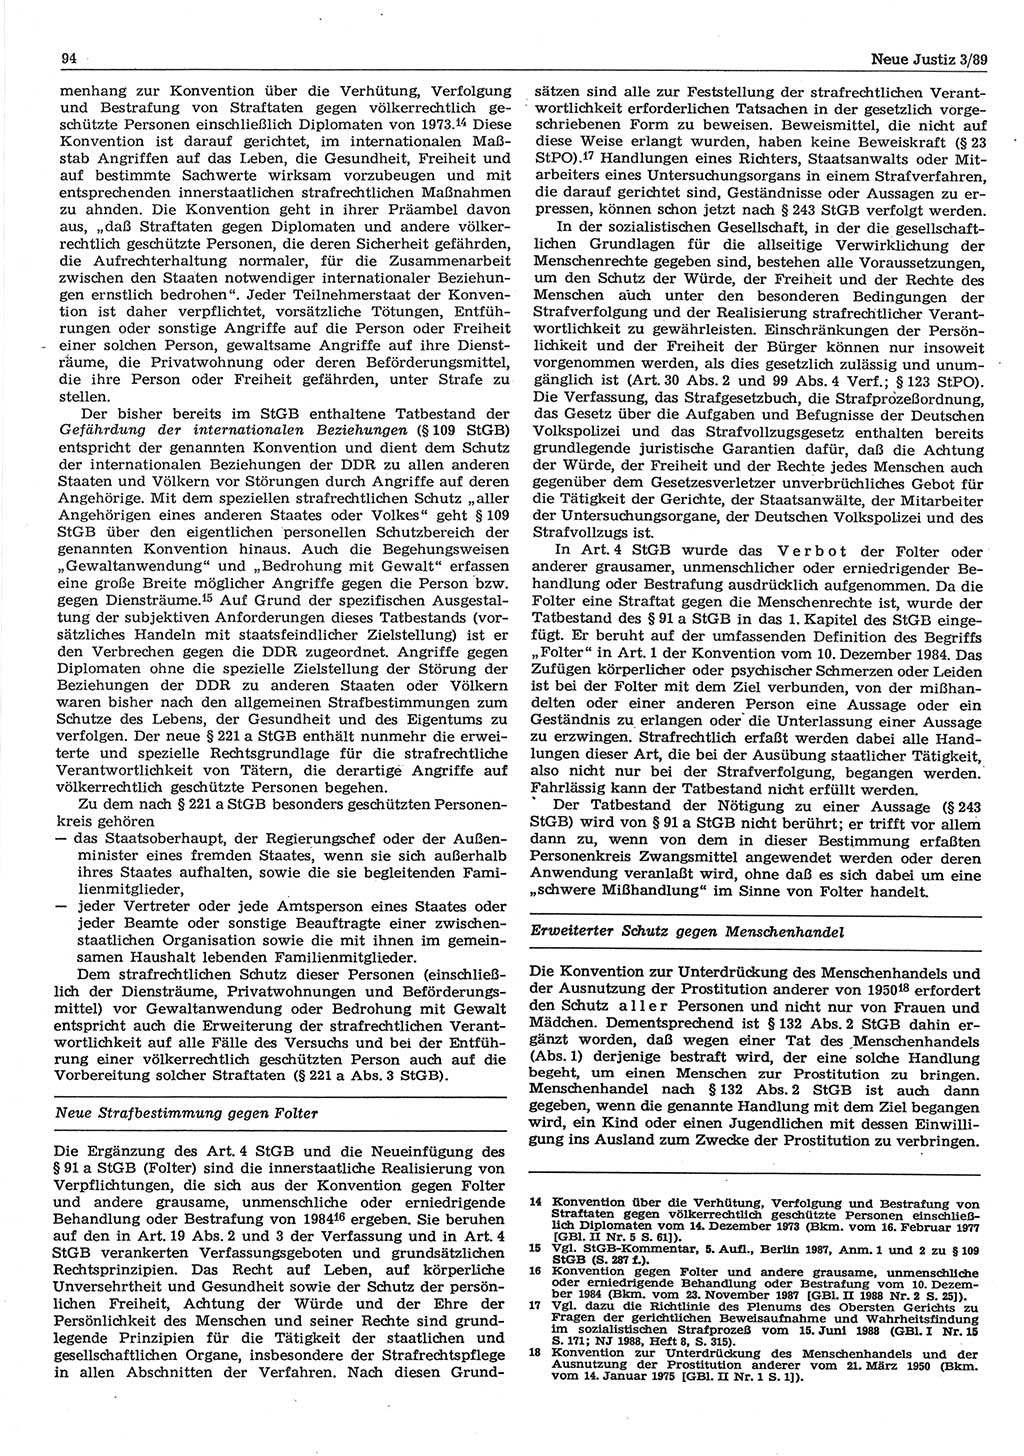 Neue Justiz (NJ), Zeitschrift für sozialistisches Recht und Gesetzlichkeit [Deutsche Demokratische Republik (DDR)], 43. Jahrgang 1989, Seite 94 (NJ DDR 1989, S. 94)